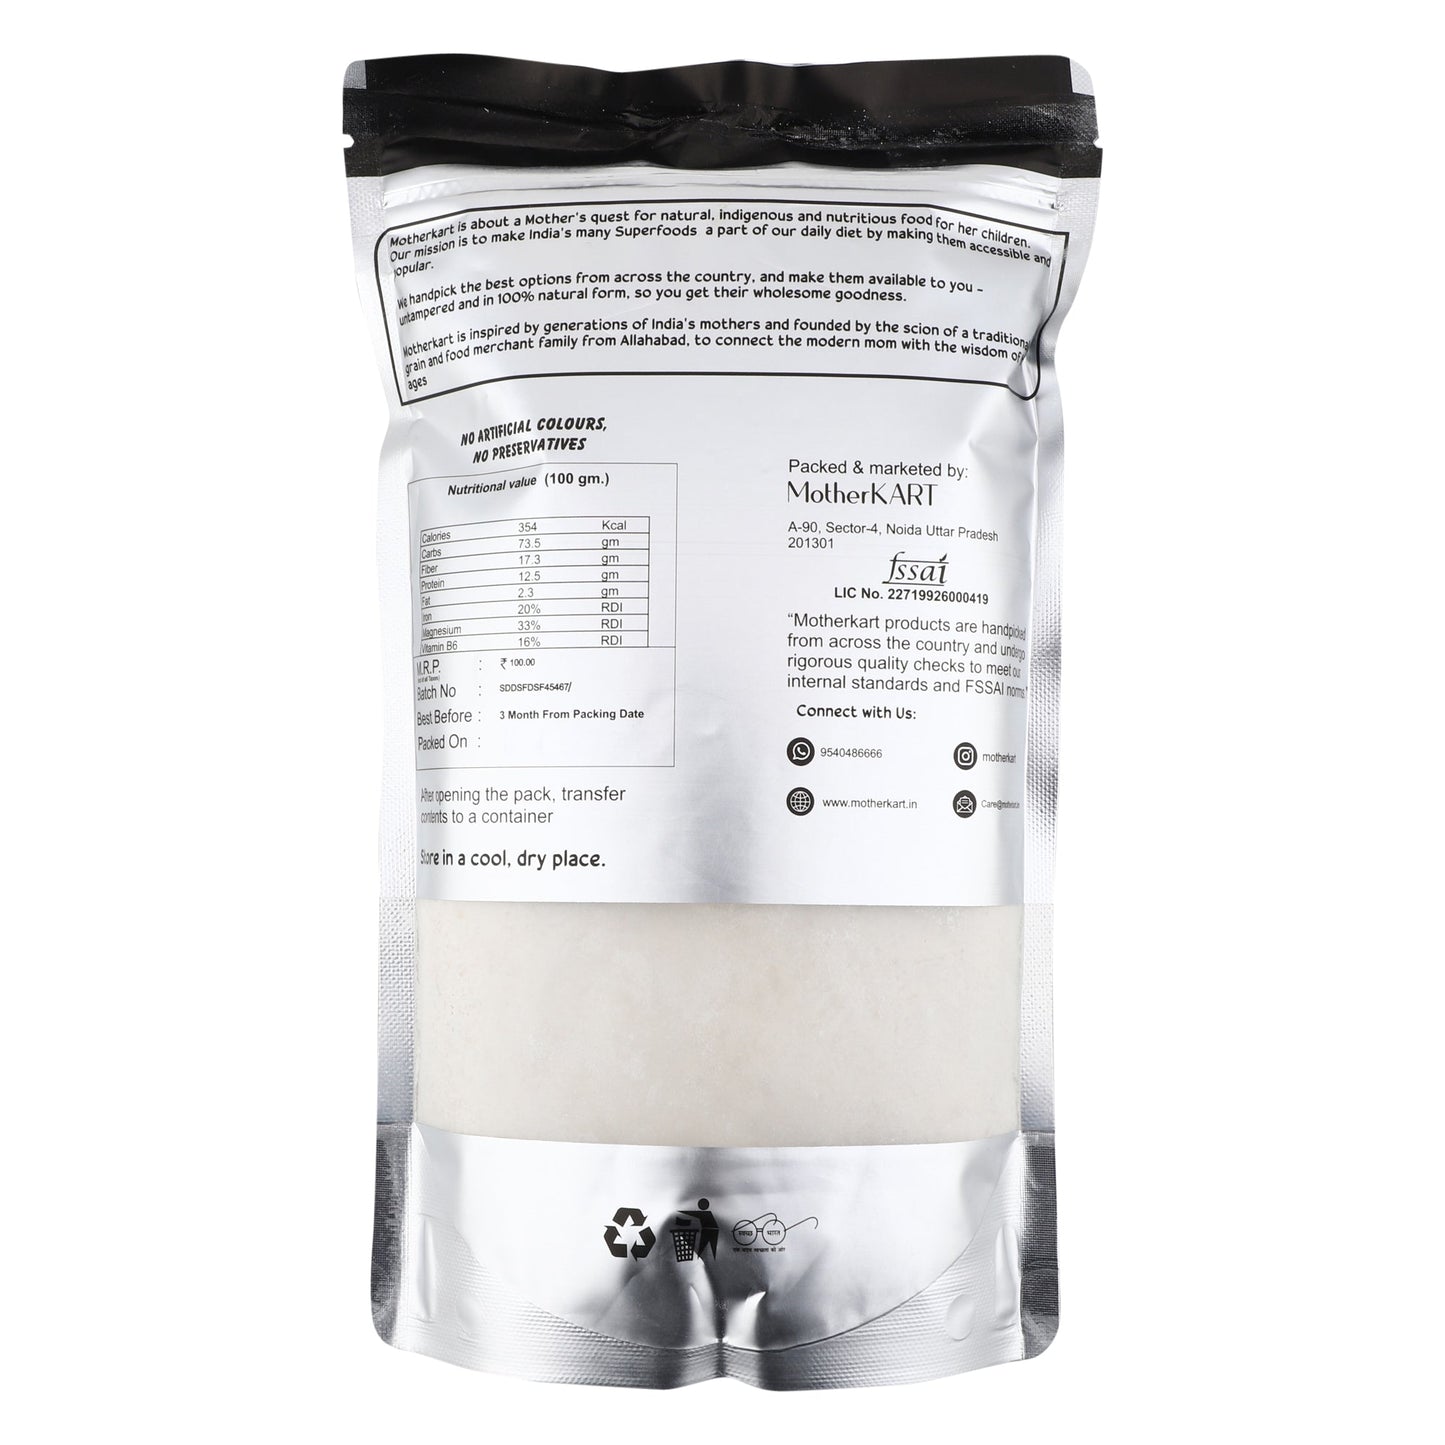 Motherkart Barley Flour (Jau Atta) - The best flour for Diabetics & Weight Loss 2 KG